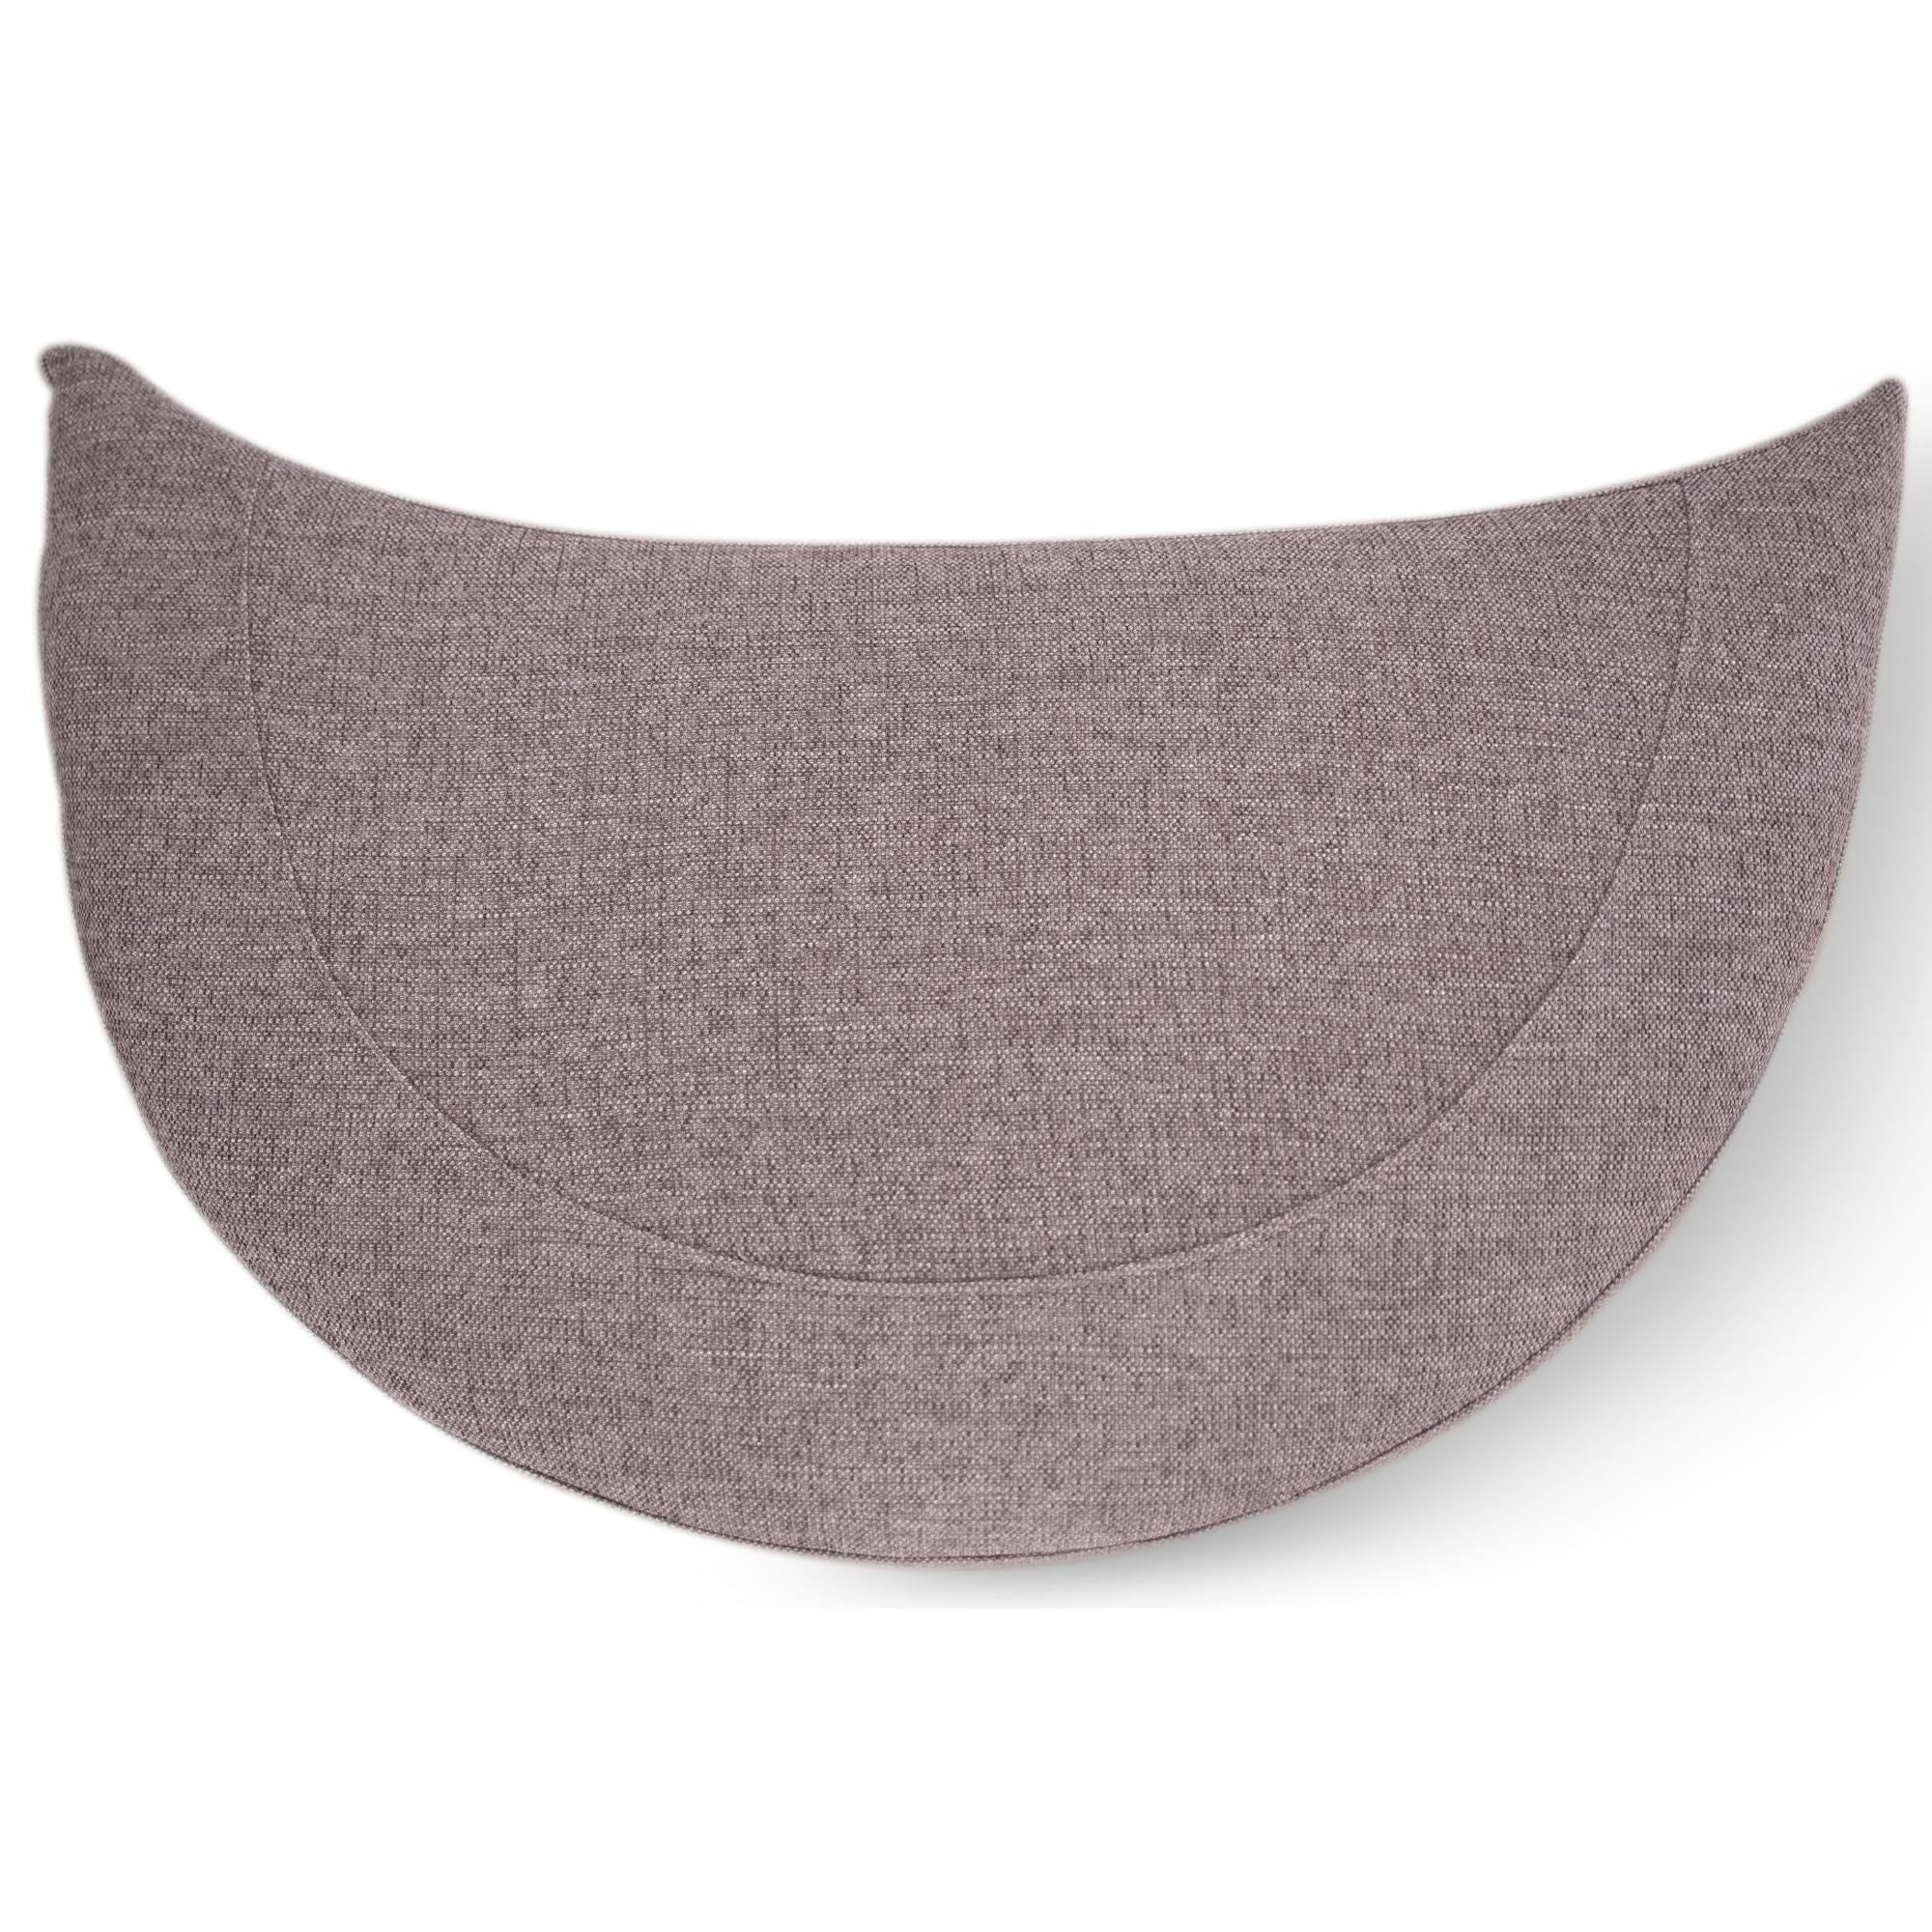 Sunshine Single Sofa Chair Fabric Swivel Ottoman - Grey Deals499